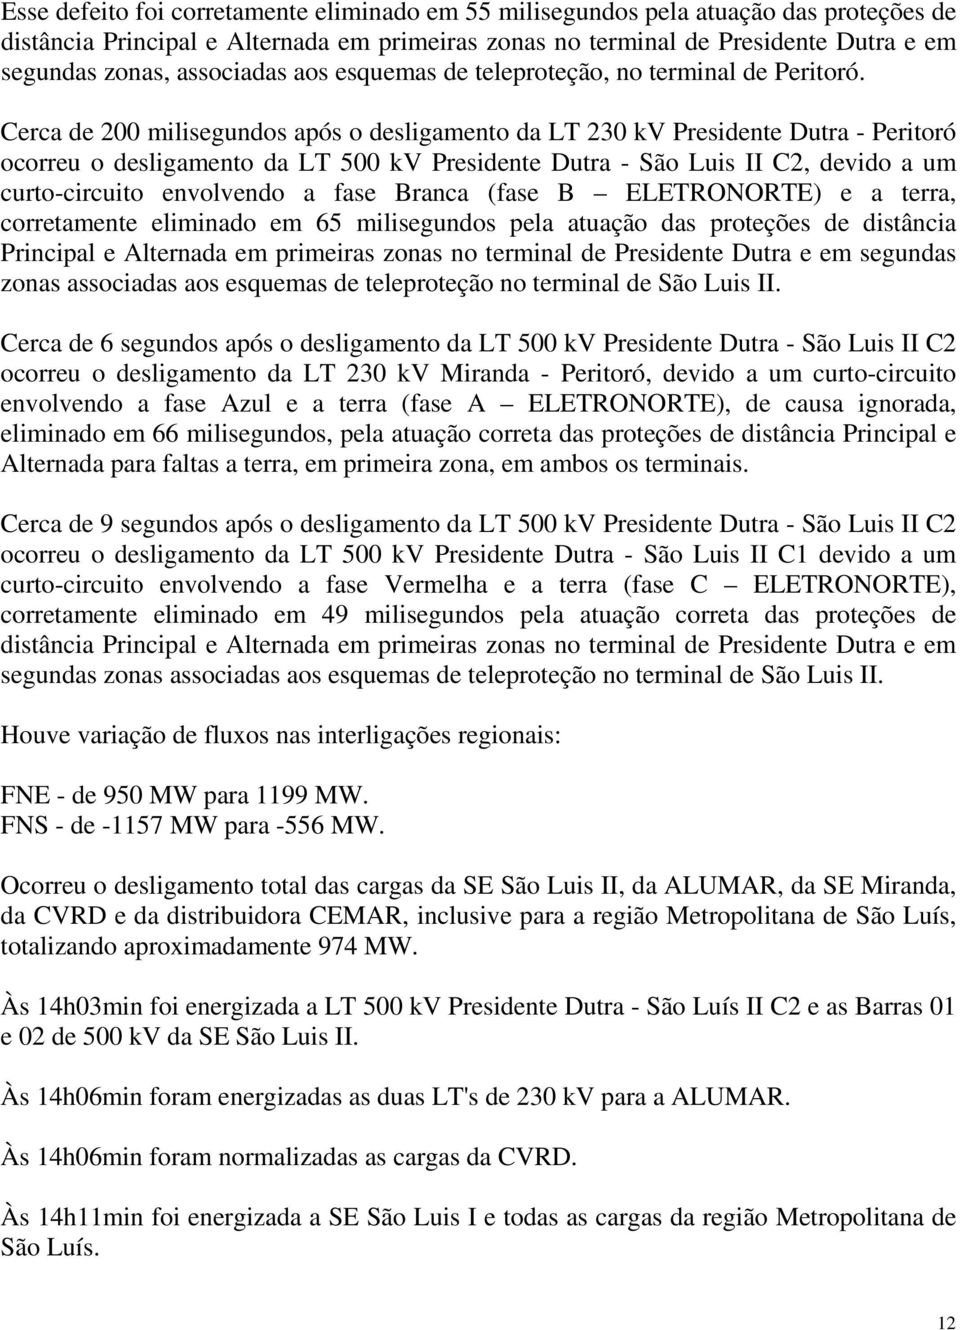 Cerca de 200 milisegundos após o desligamento da LT 230 kv Presidente Dutra - Peritoró ocorreu o desligamento da LT 500 kv Presidente Dutra - São Luis II C2, devido a um curto-circuito envolvendo a